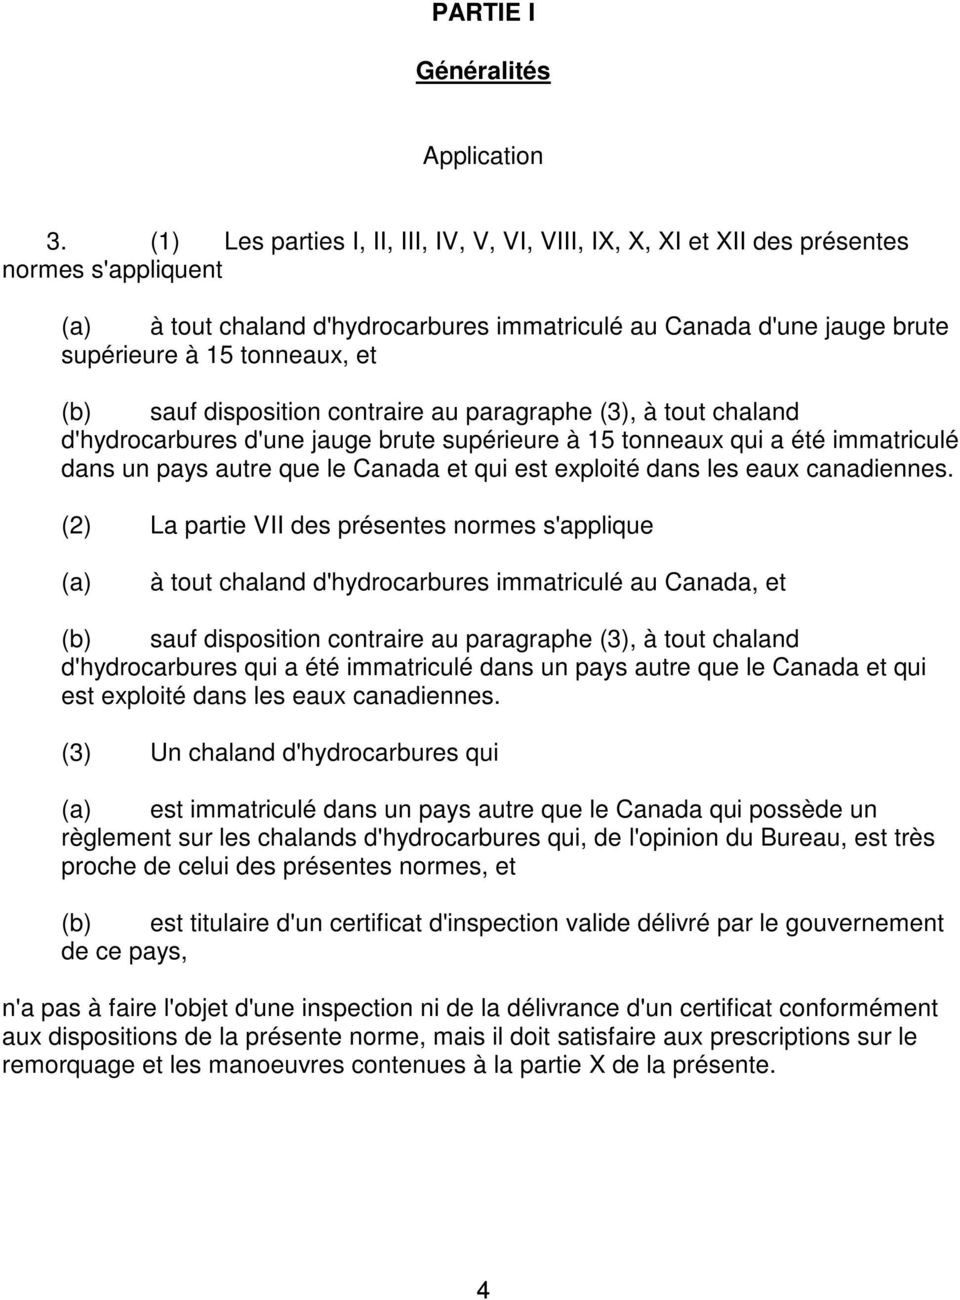 (b) sauf disposition contraire au paragraphe (3), à tout chaland d'hydrocarbures d'une jauge brute supérieure à 15 tonneaux qui a été immatriculé dans un pays autre que le Canada et qui est exploité